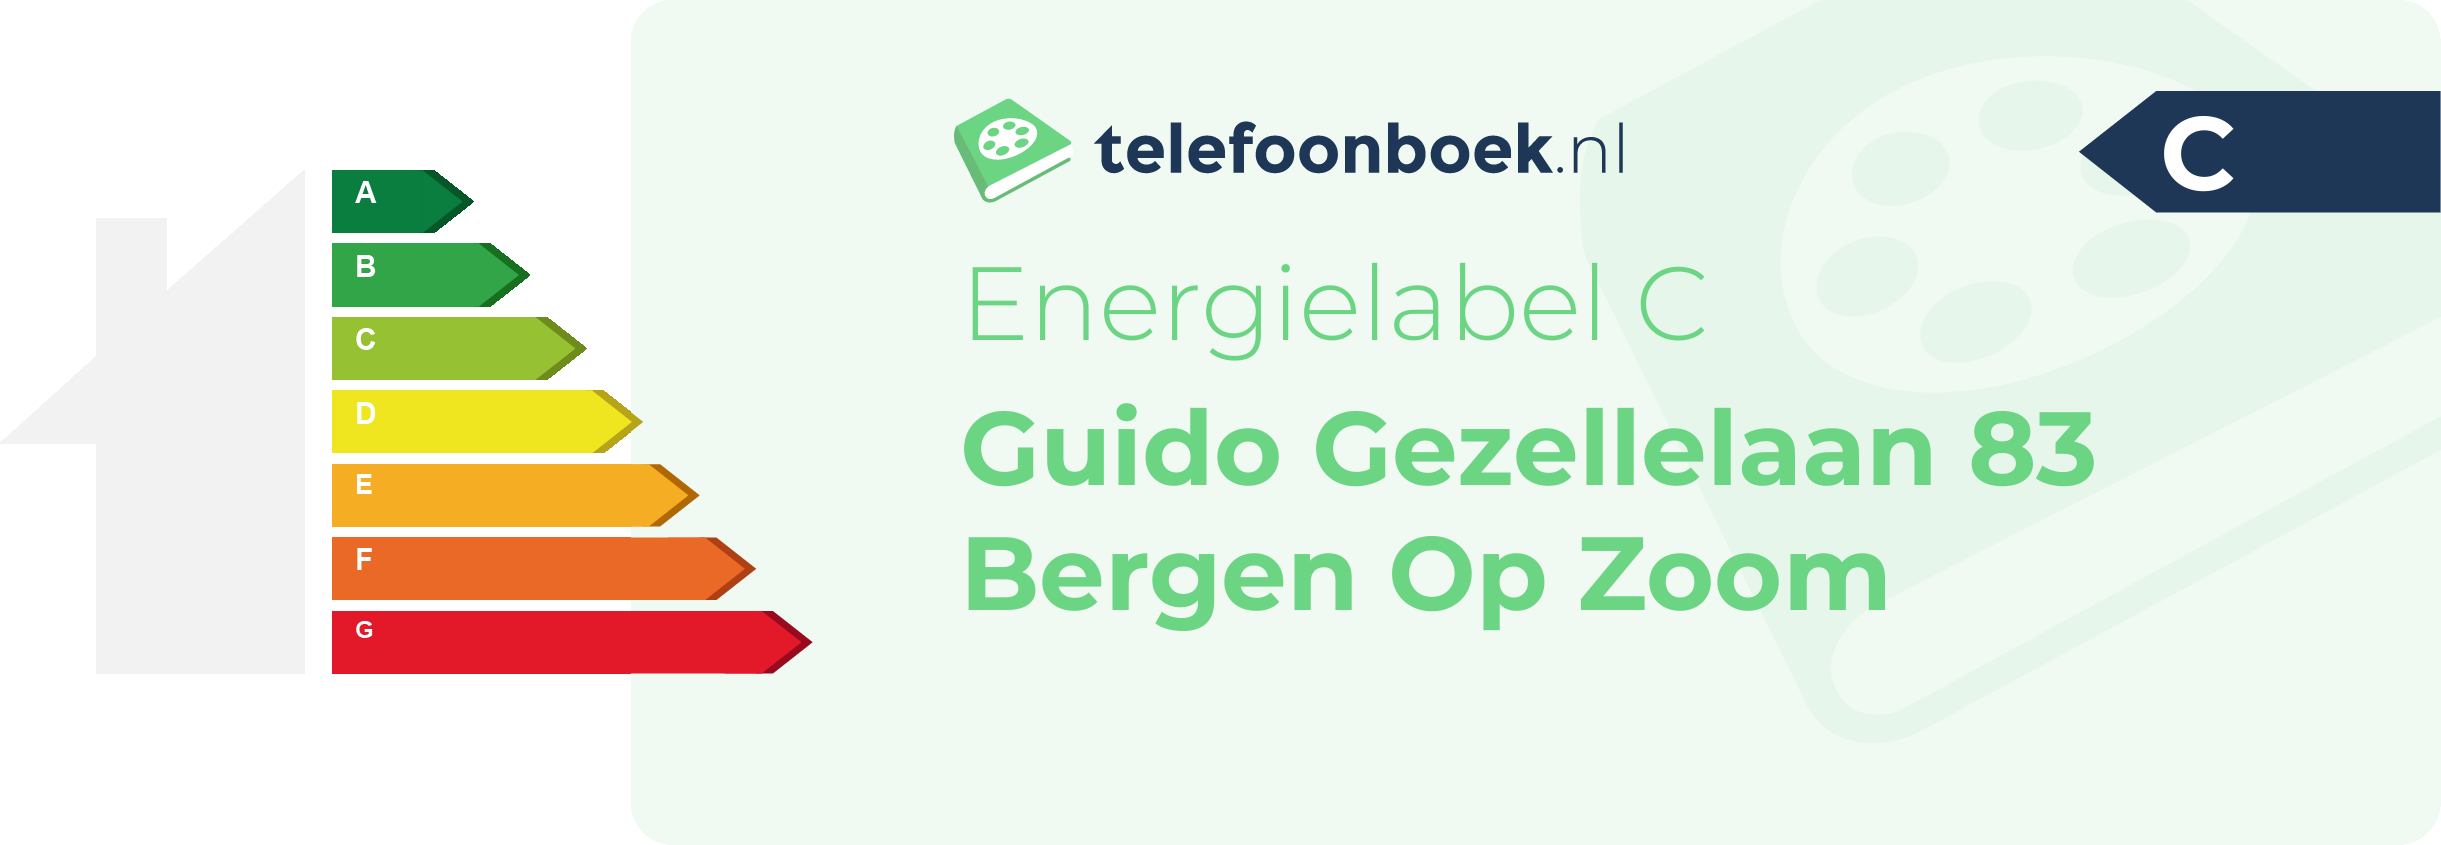 Energielabel Guido Gezellelaan 83 Bergen Op Zoom